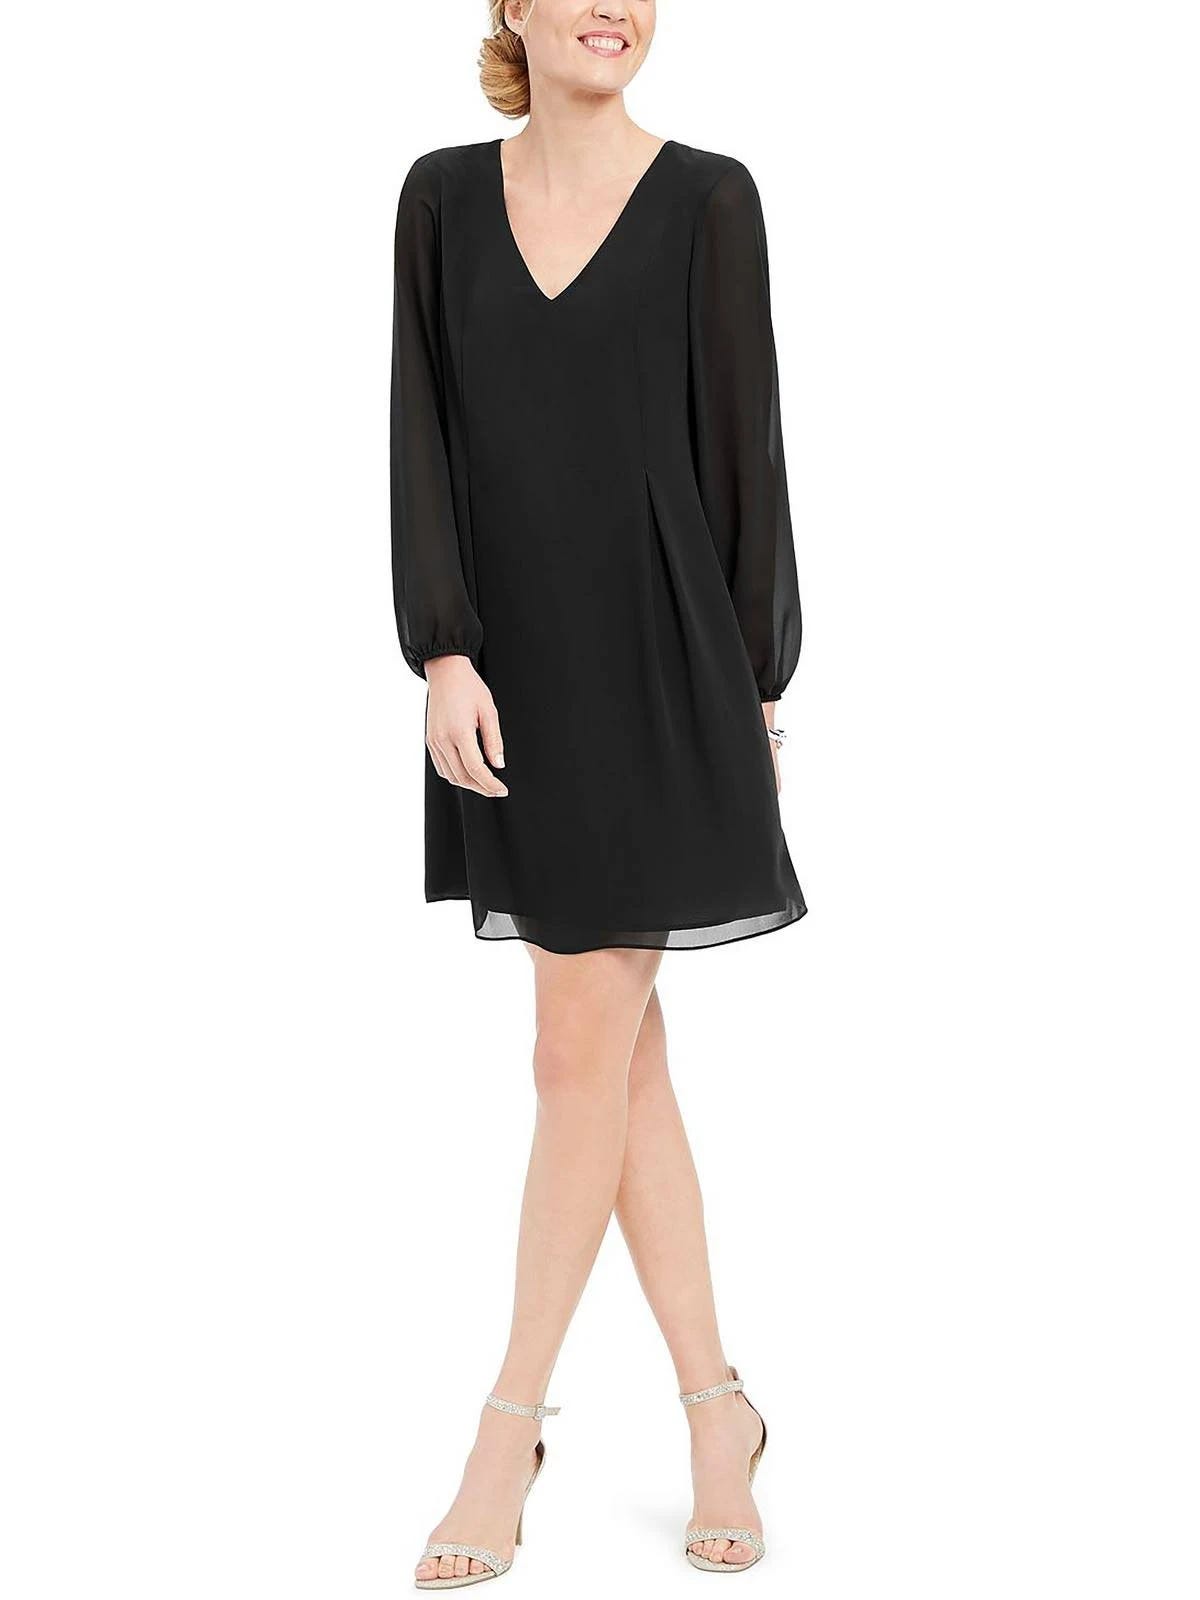 Elegant Black Mini Shift Dress with Bow-Back Detail | Image